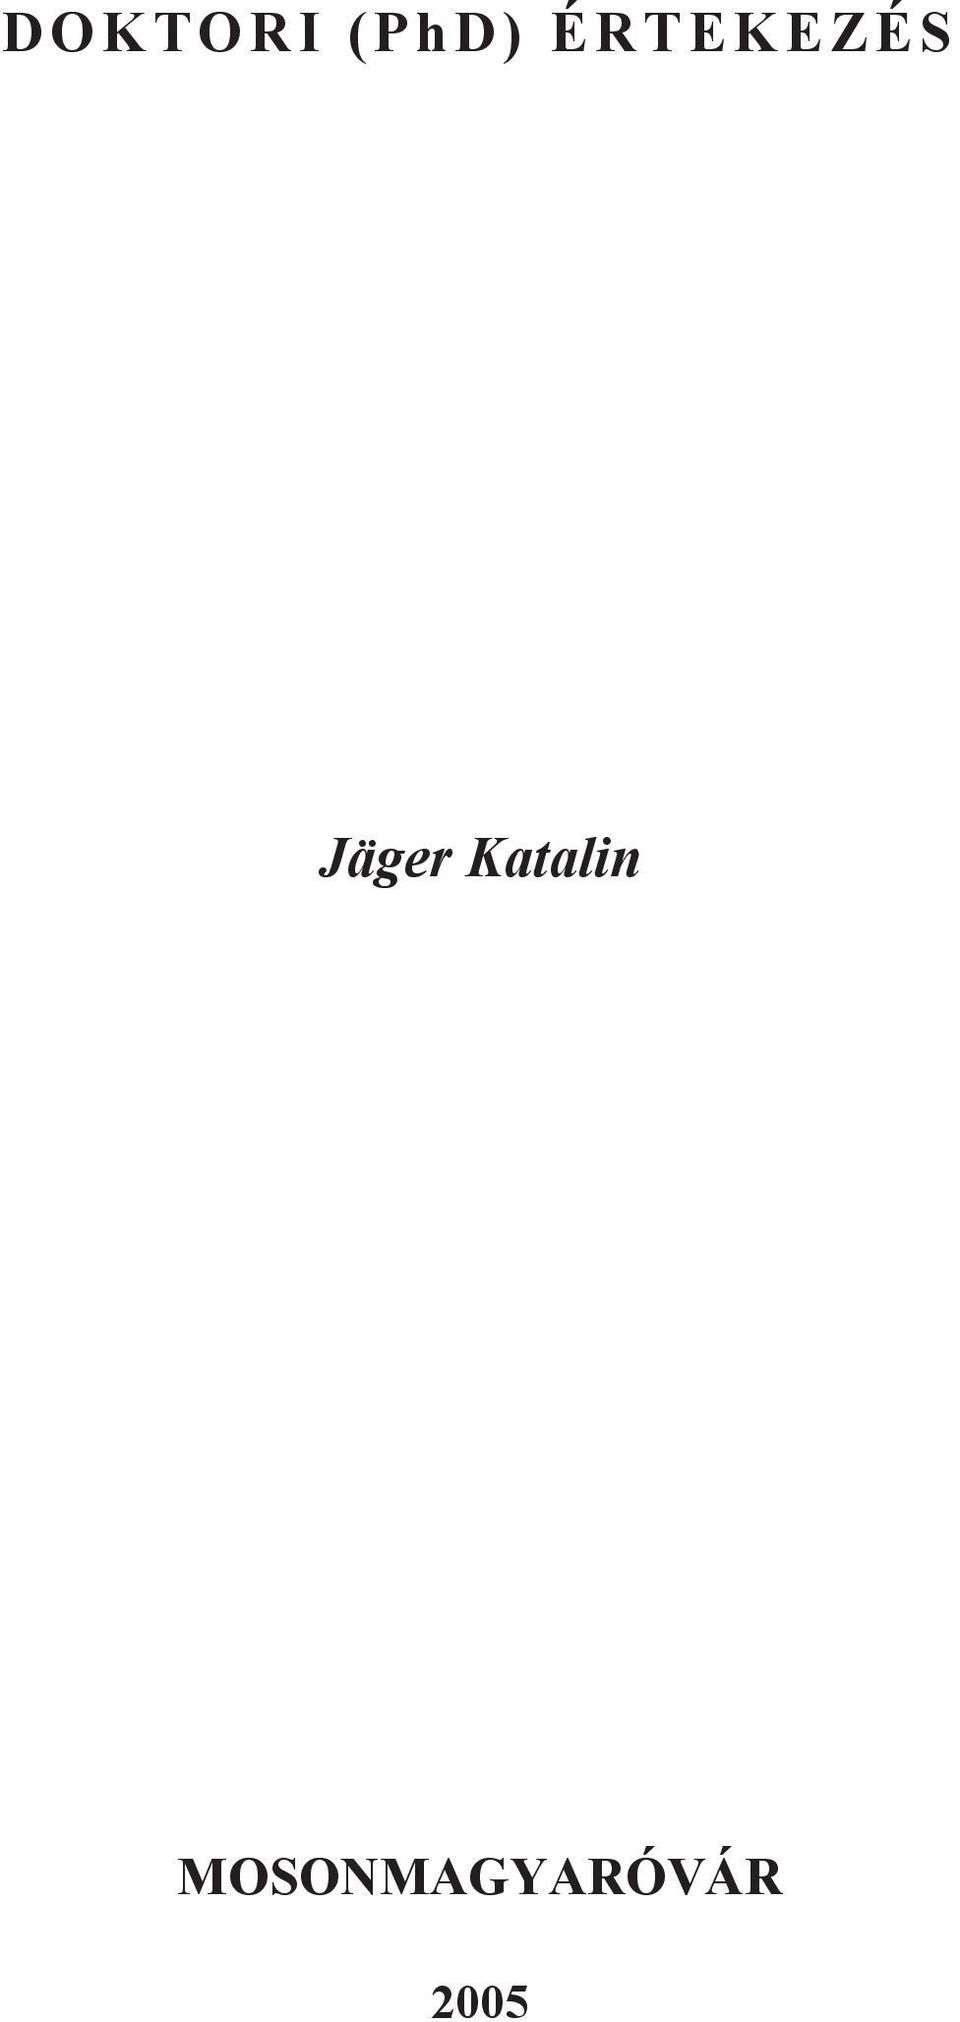 Jäger Katalin